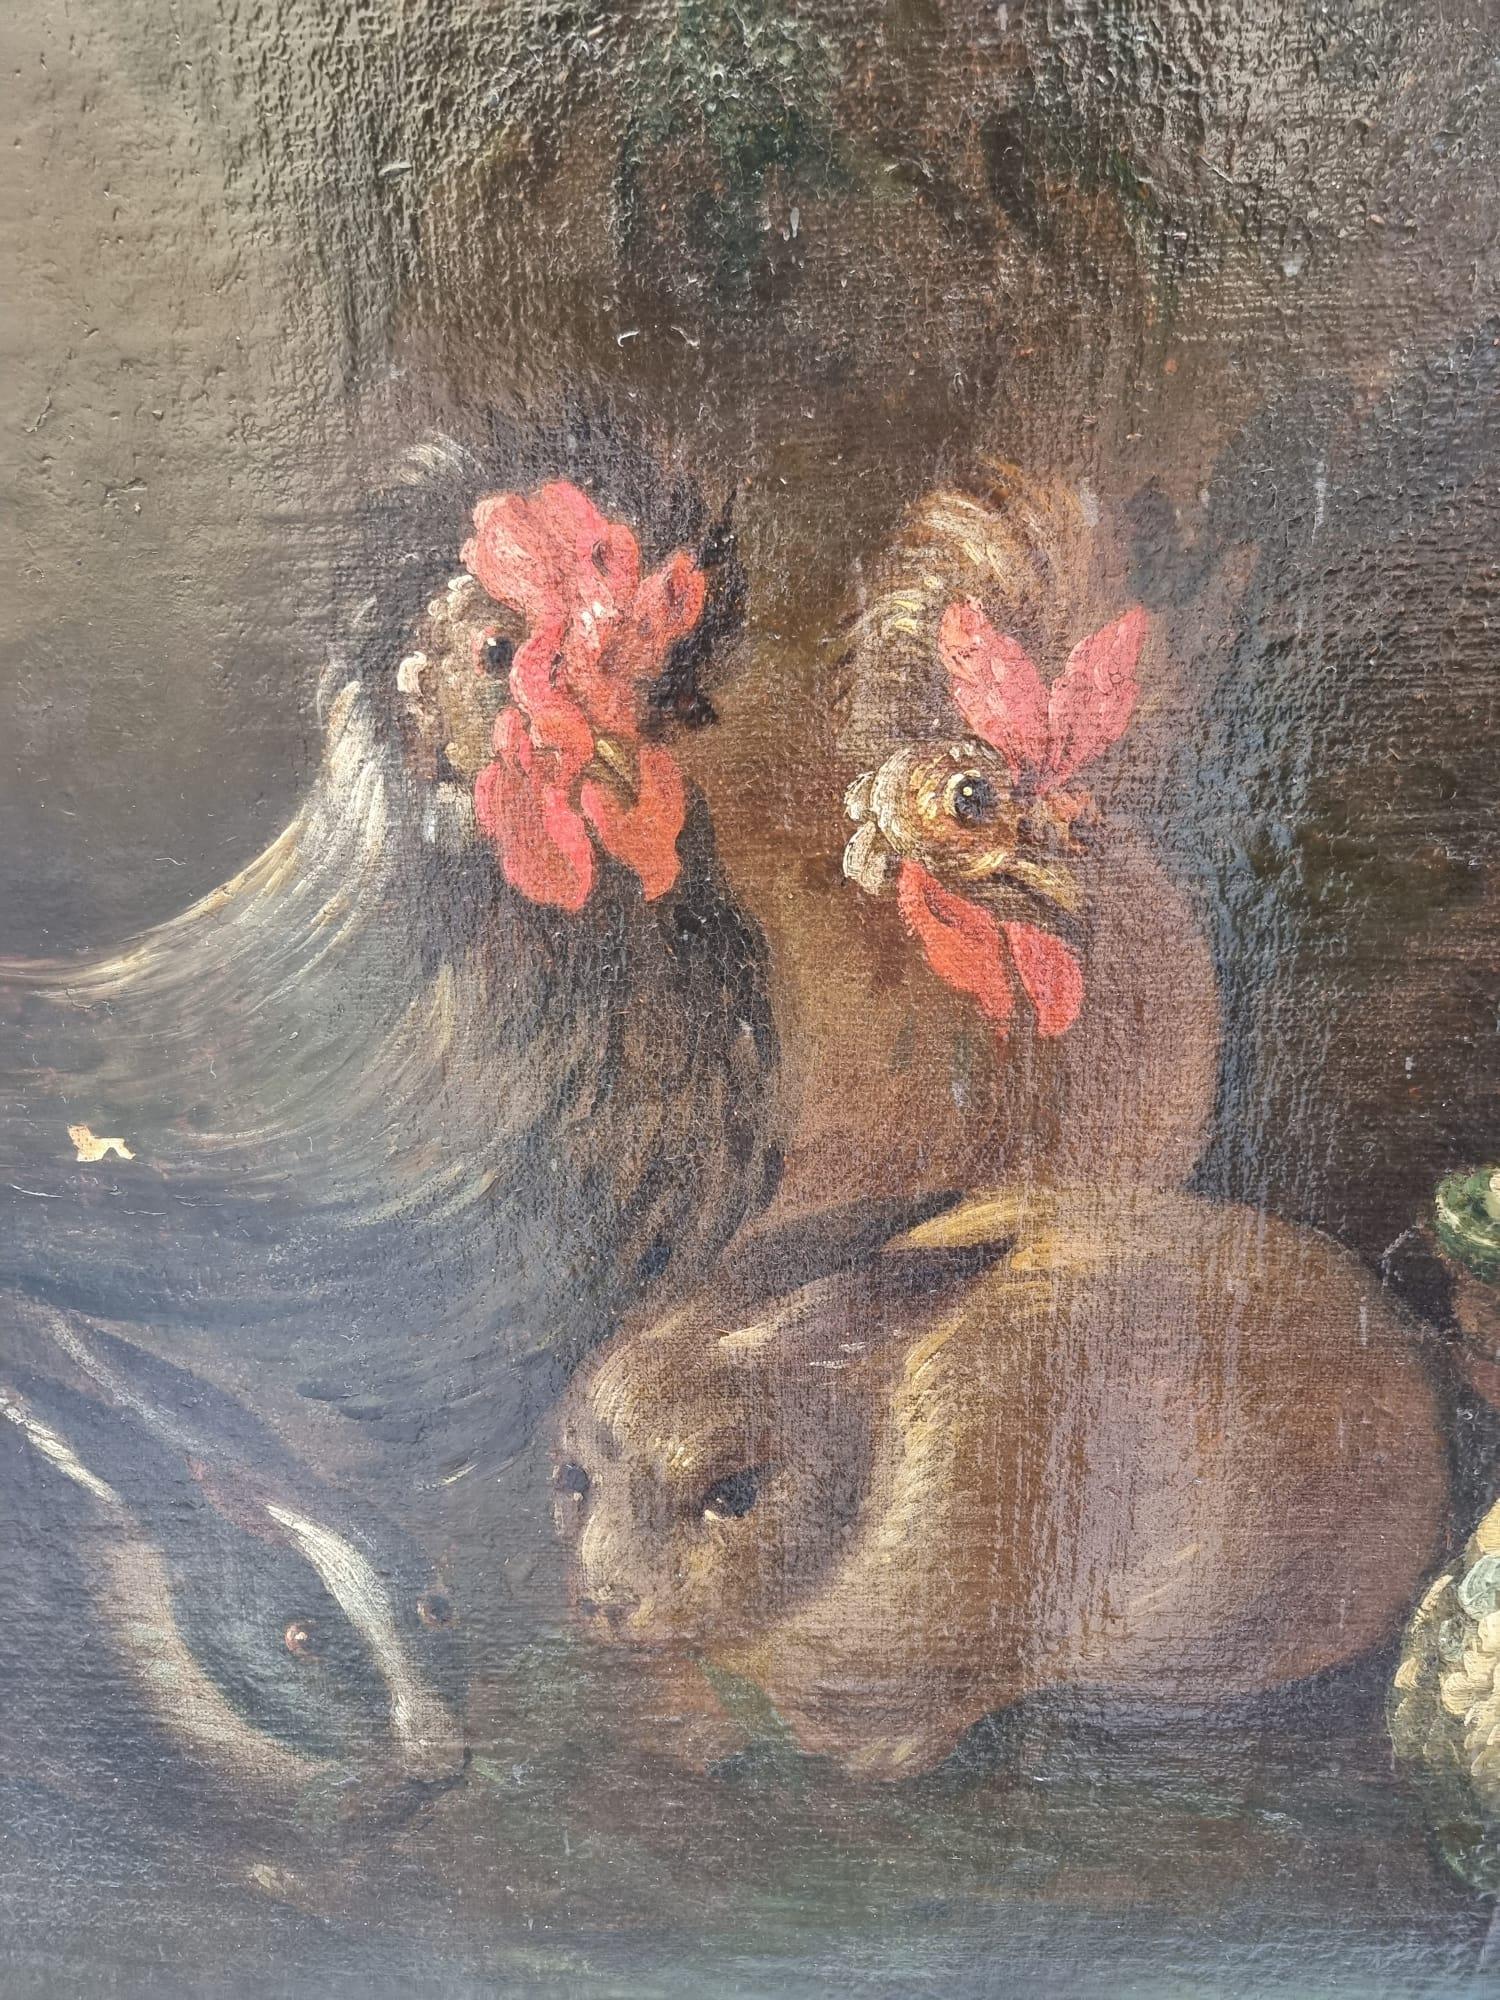 Stilleben Ölgemälde auf Leinwand mit Kürbissen, Kaninchen und Hühnern. Toskana XVII. Jahrhundert.
Das Gemälde bedarf einer sehr kleinen Restaurierung. Sie wurde unterfüttert.
